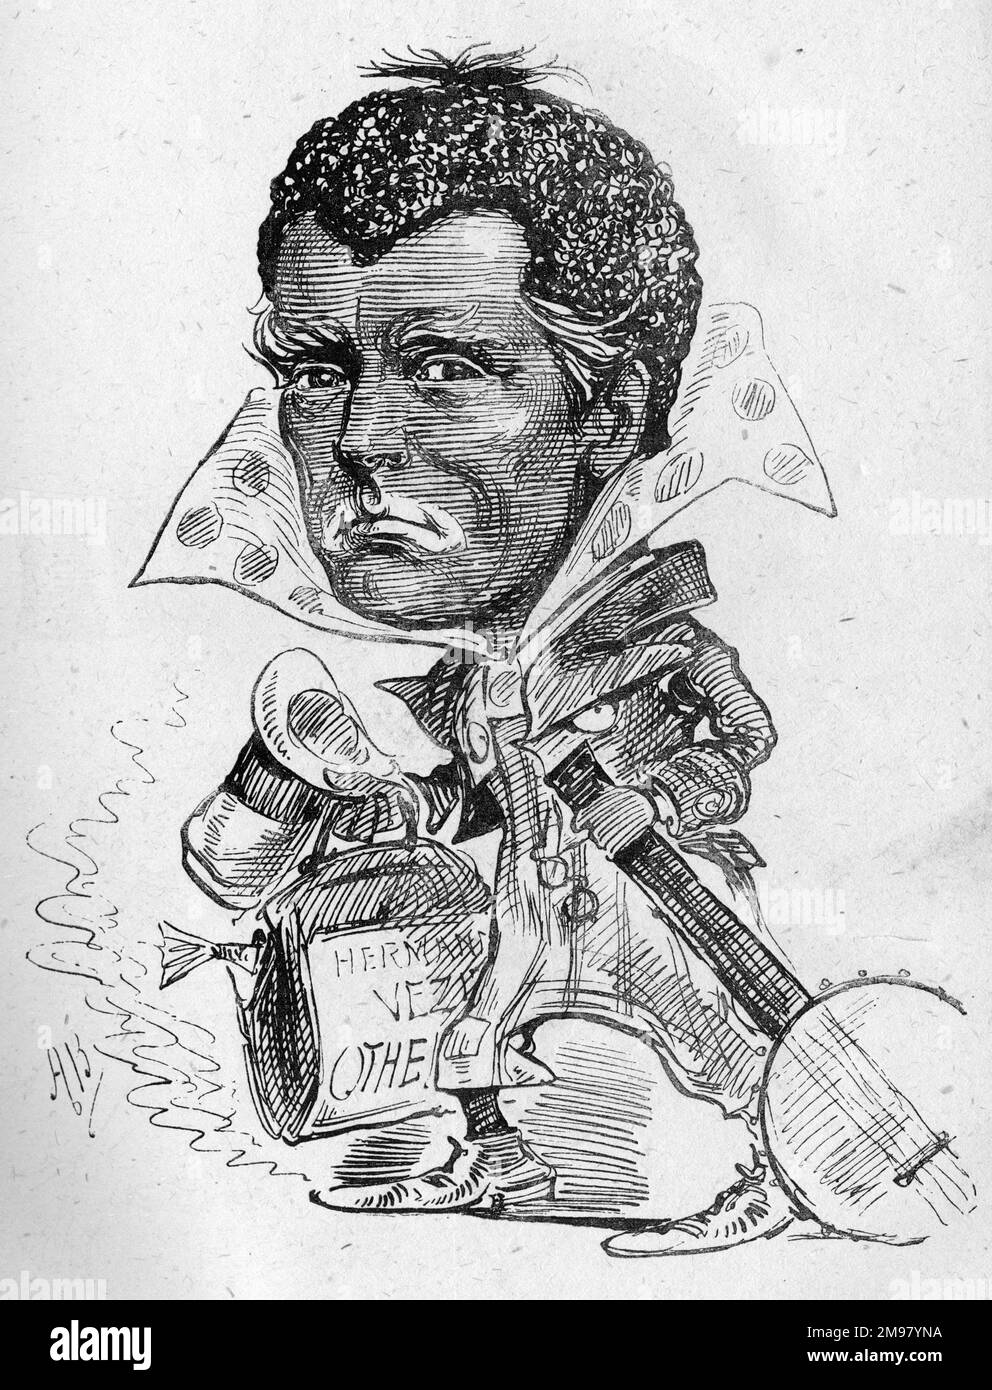 Karikatur von Hermann Vezin (1829-1910), in den USA geborener Schauspieler von Shakespeare, der im Vereinigten Königreich tätig ist. Zur Zeit dieses Cartoons war er in London und spielte die Rolle von Iago in Othello. Hier sieht man Schwärmereien im Gesicht als Minstrel mit einem Banjo. Stockfoto